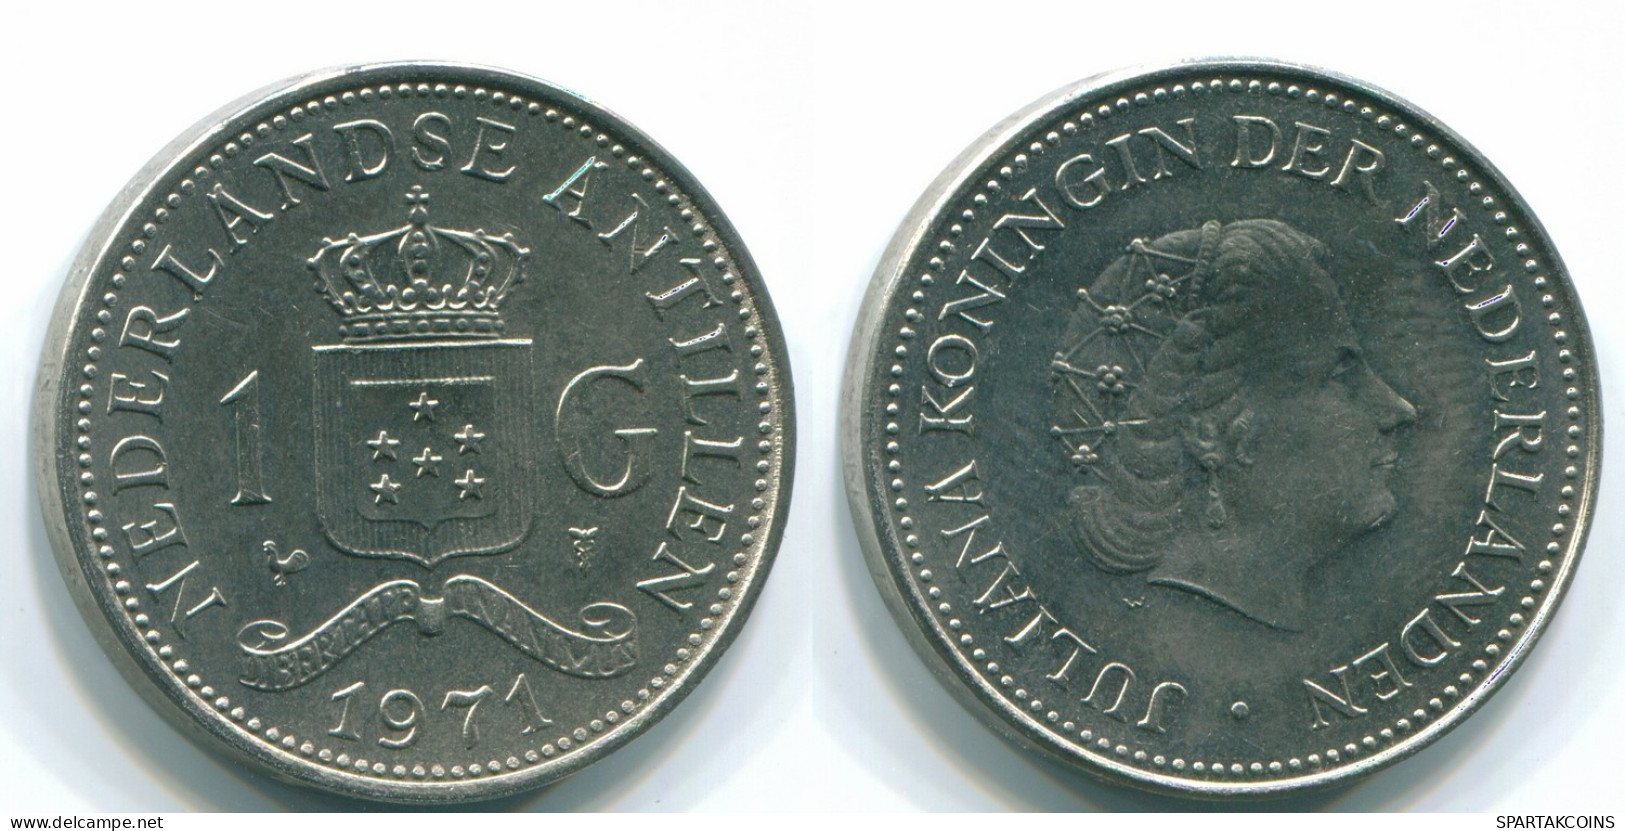 1 GULDEN 1971 ANTILLAS NEERLANDESAS Nickel Colonial Moneda #S11966.E.A - Netherlands Antilles